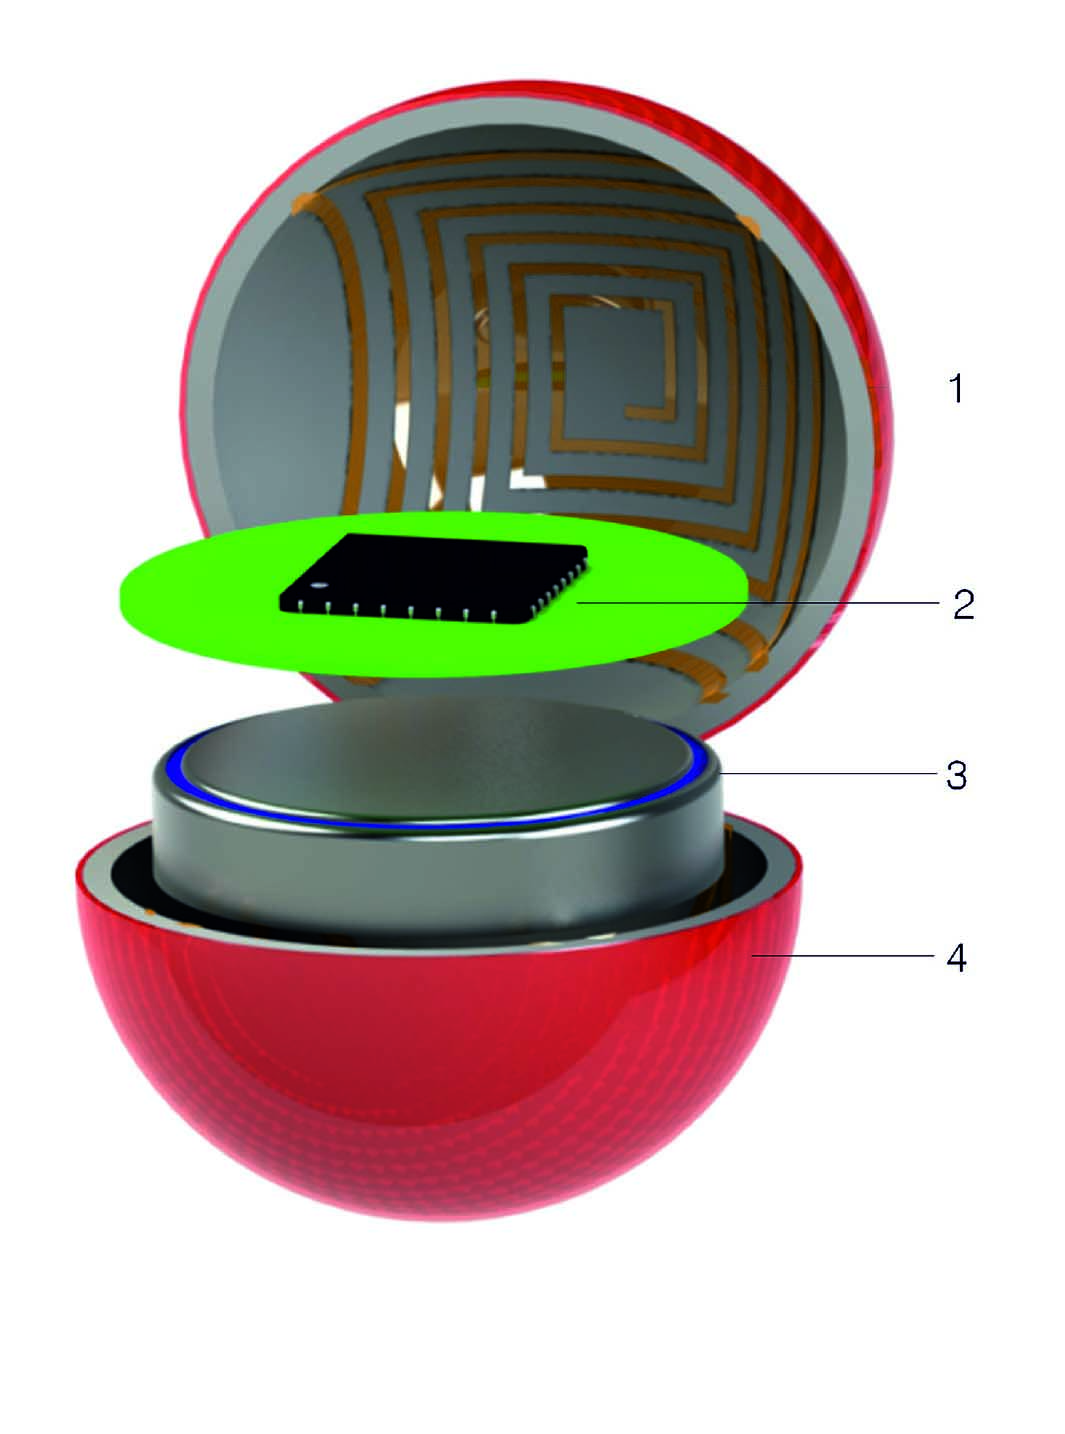 Der Aufbau der Sens-o-Spheres: 1) Energieempfänger, 2) Signalverarbeitung, 3) aufladbare Batterie, 4) Kapselung.